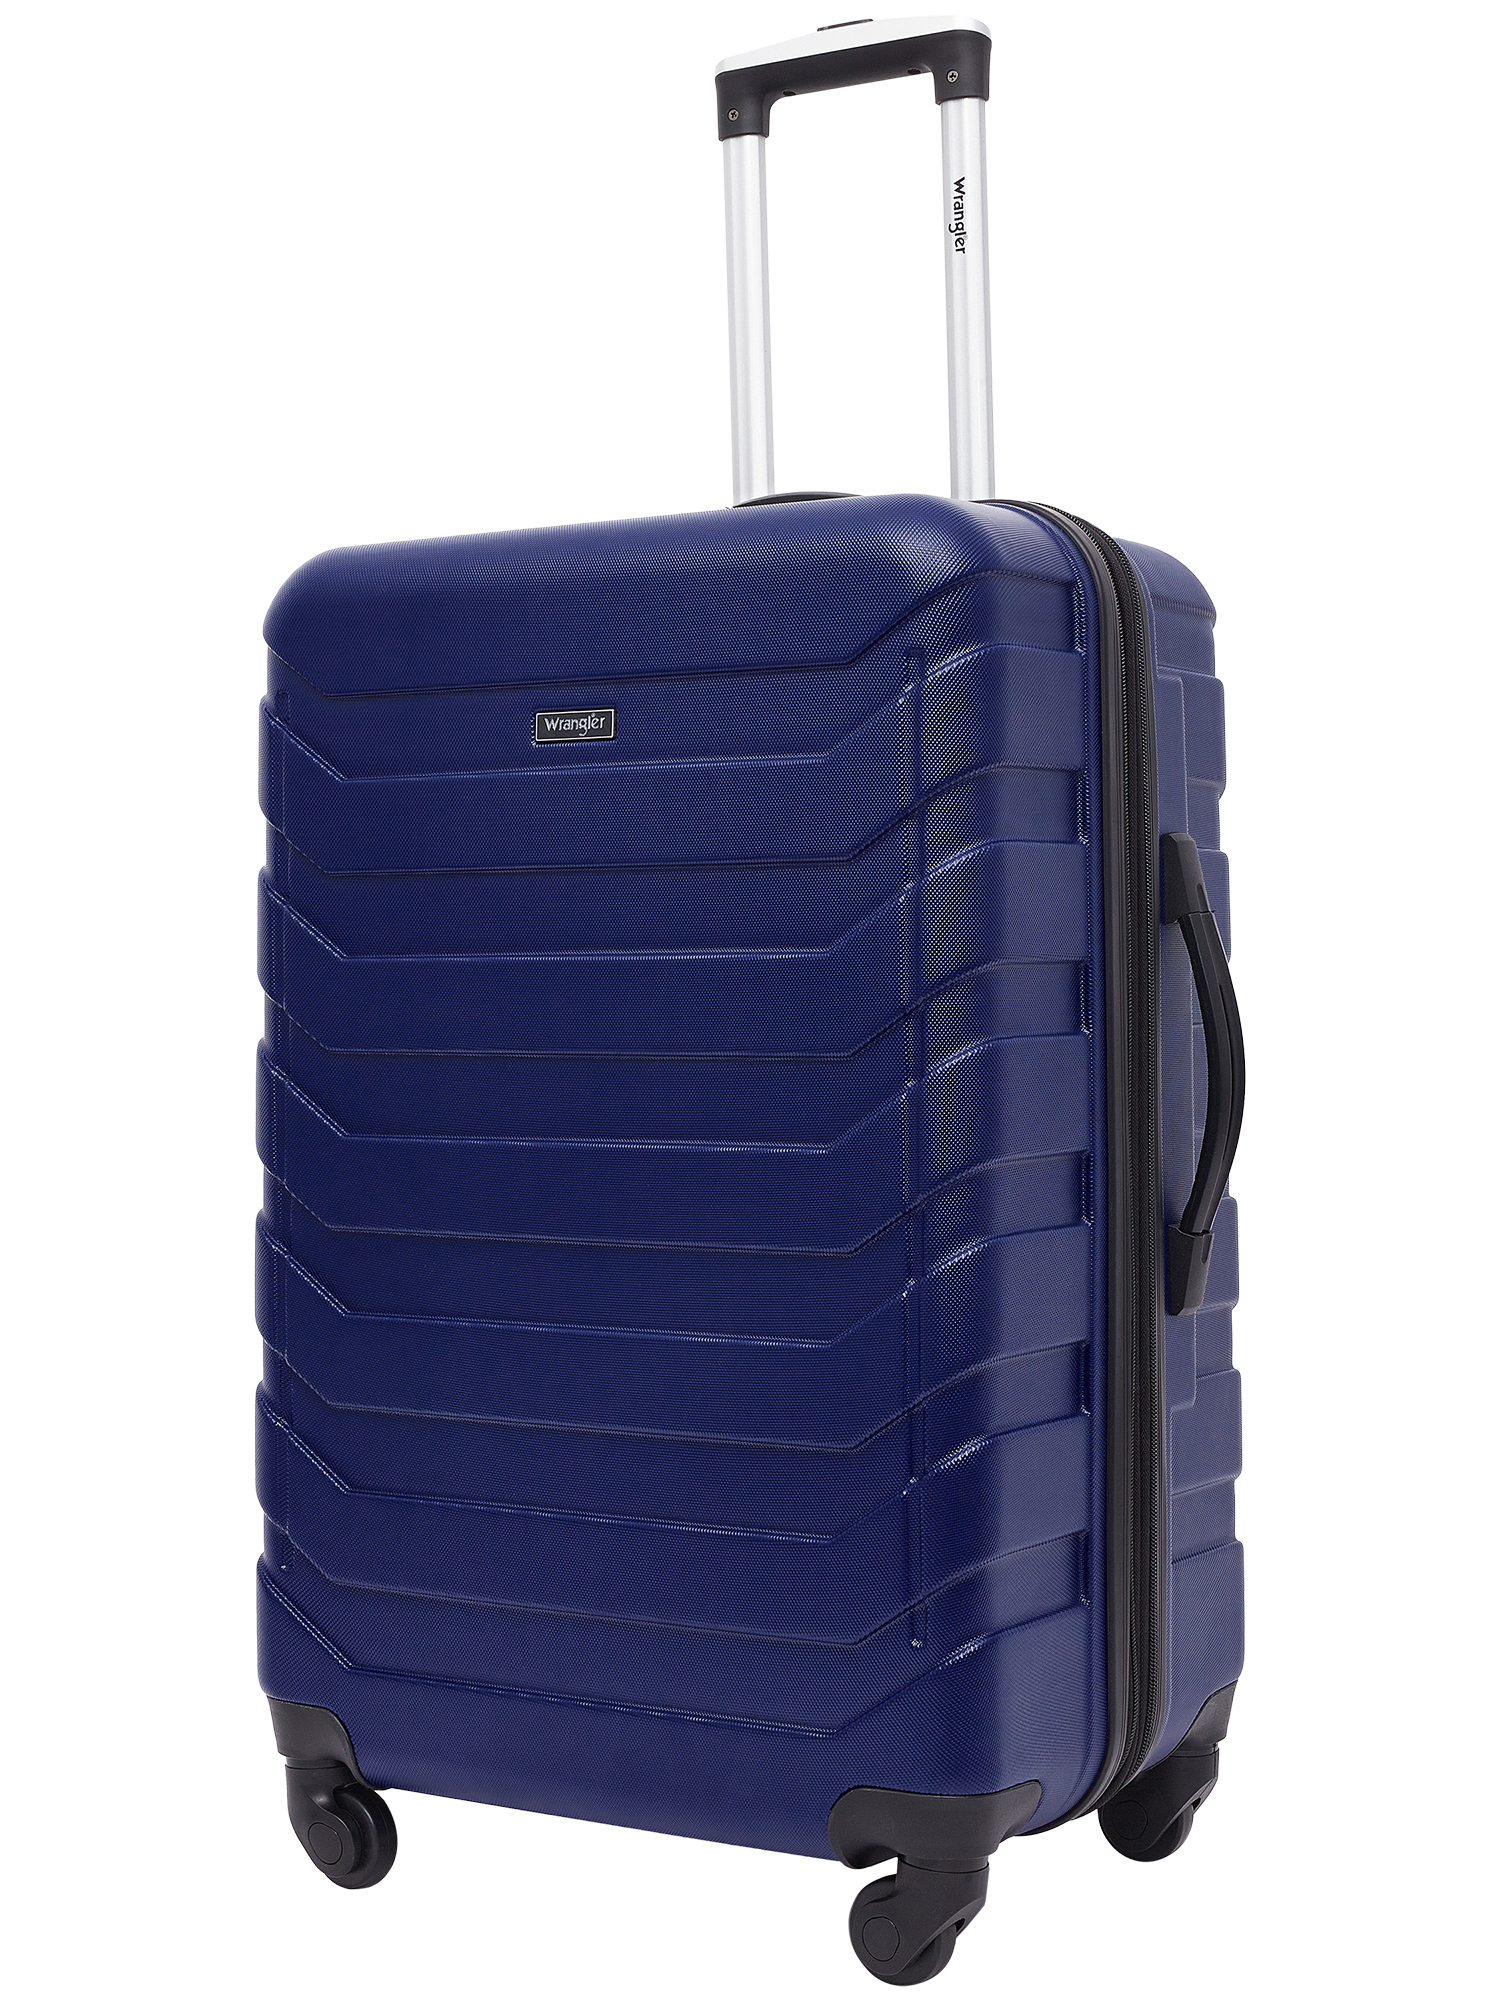 Wrangler 4 Piece Rolling Hardside Luggage Set, Blue - image 3 of 9